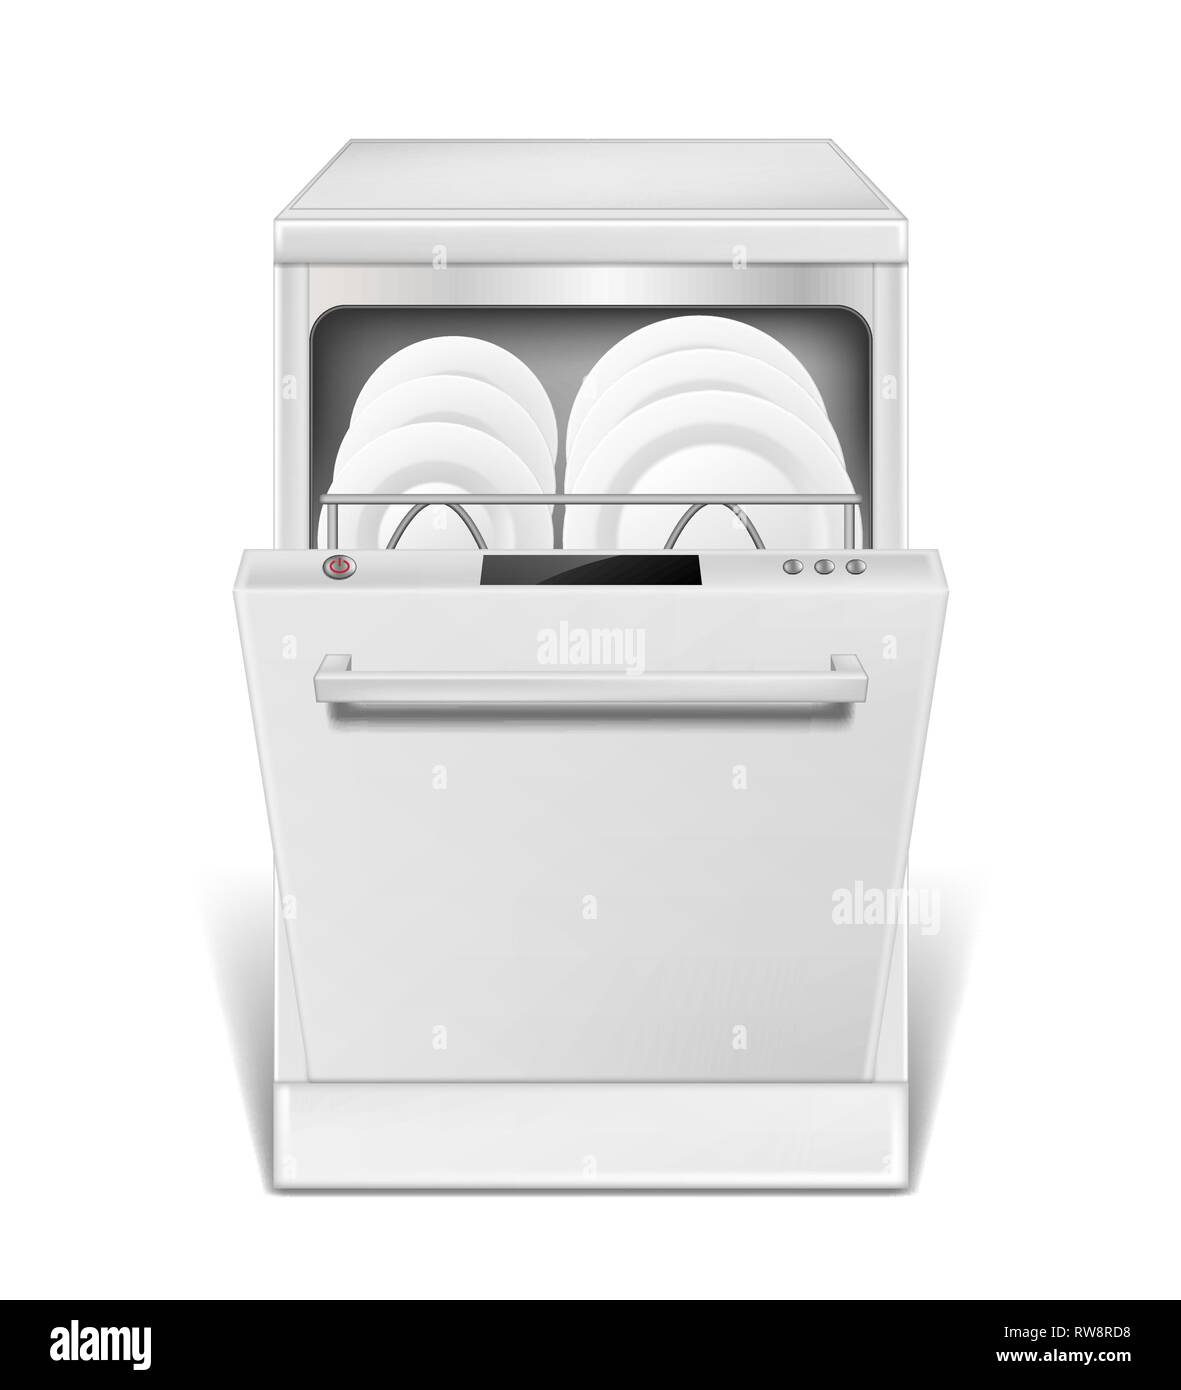 La machine lave-vaisselle réaliste avec porte ouverte. Lave-vaisselle blanc avec des assiettes et verres, vue avant. isolées pour maquette d'électroménager Illustration de Vecteur